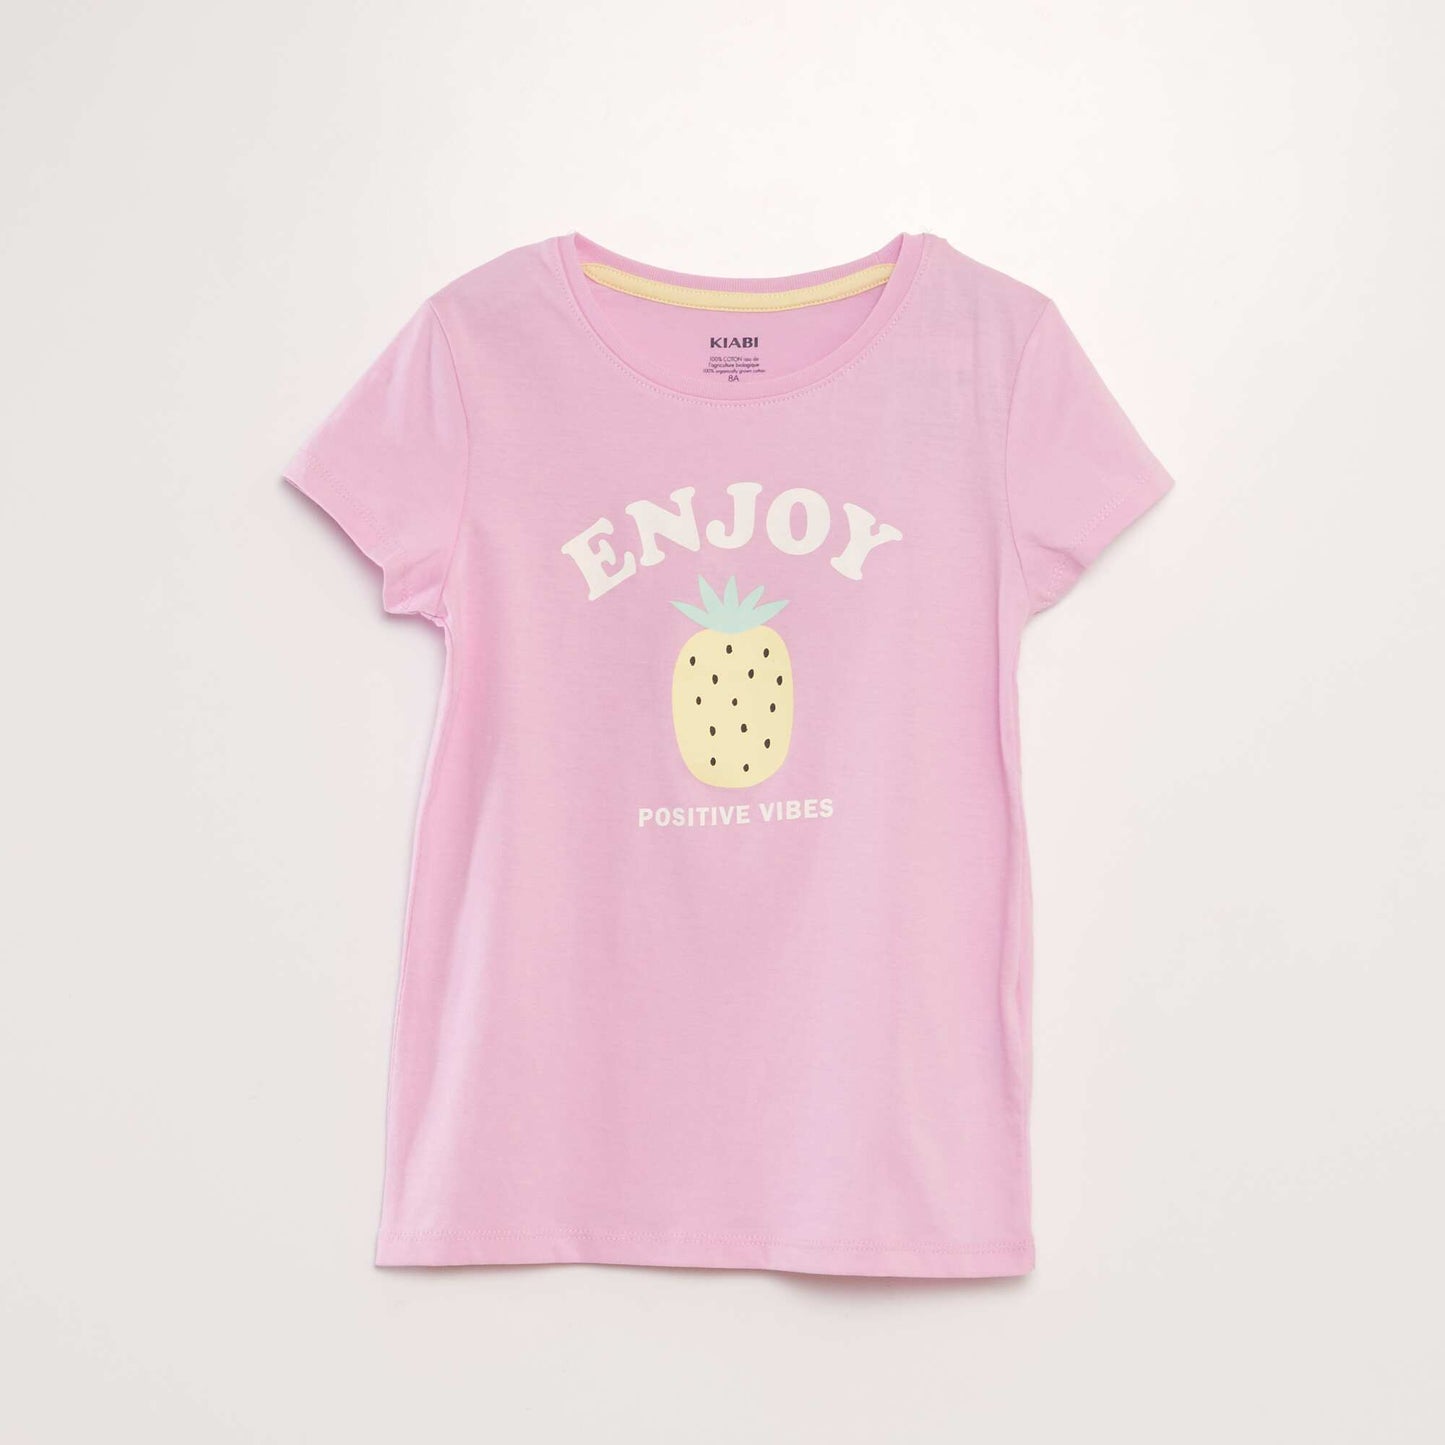 Ensemble de pyjama : T-shirt + short - 2 pièces Rose bonbon